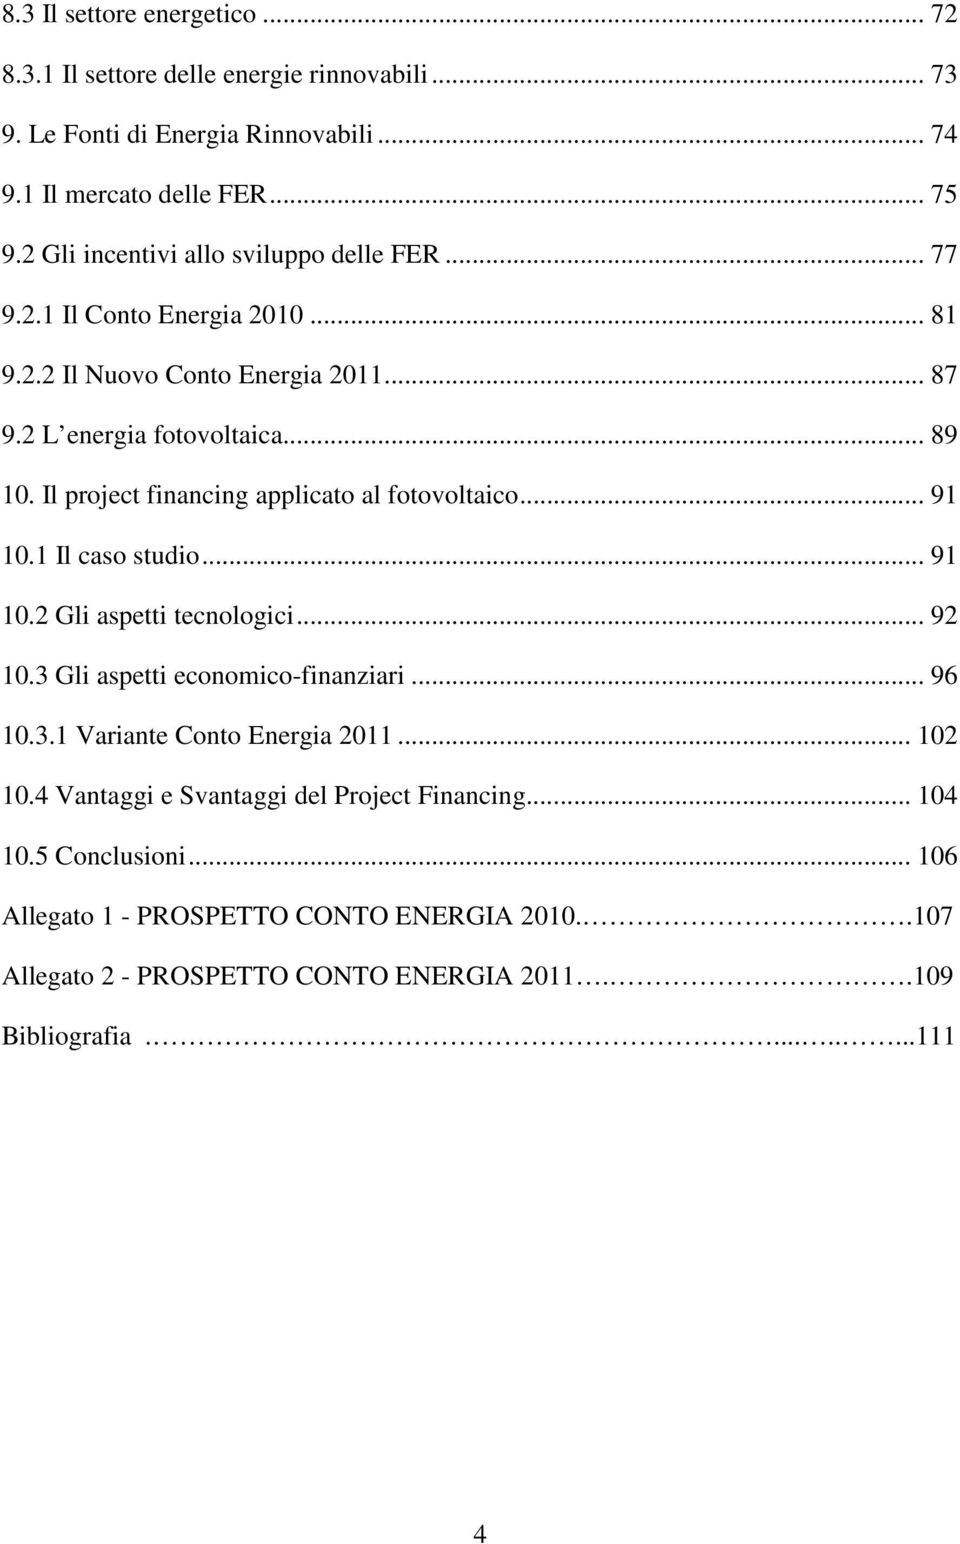 Il project financing applicato al fotovoltaico... 91 10.1 Il caso studio... 91 10.2 Gli aspetti tecnologici... 92 10.3 Gli aspetti economico-finanziari... 96 10.3.1 Variante Conto Energia 2011.